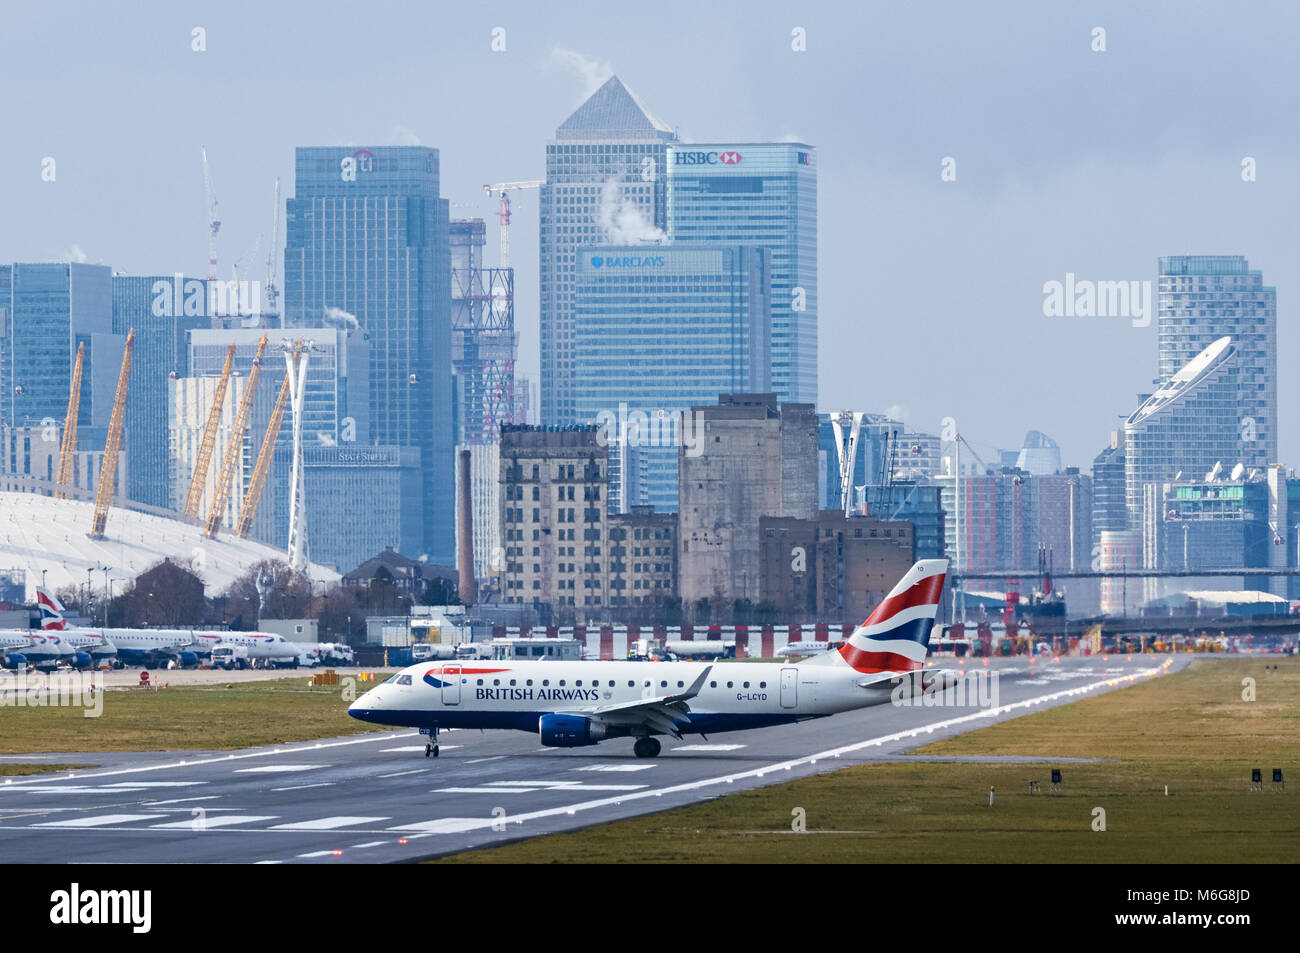 British Airways Airliner à l'aéroport de London City, Londres Angleterre Royaume-Uni Banque D'Images